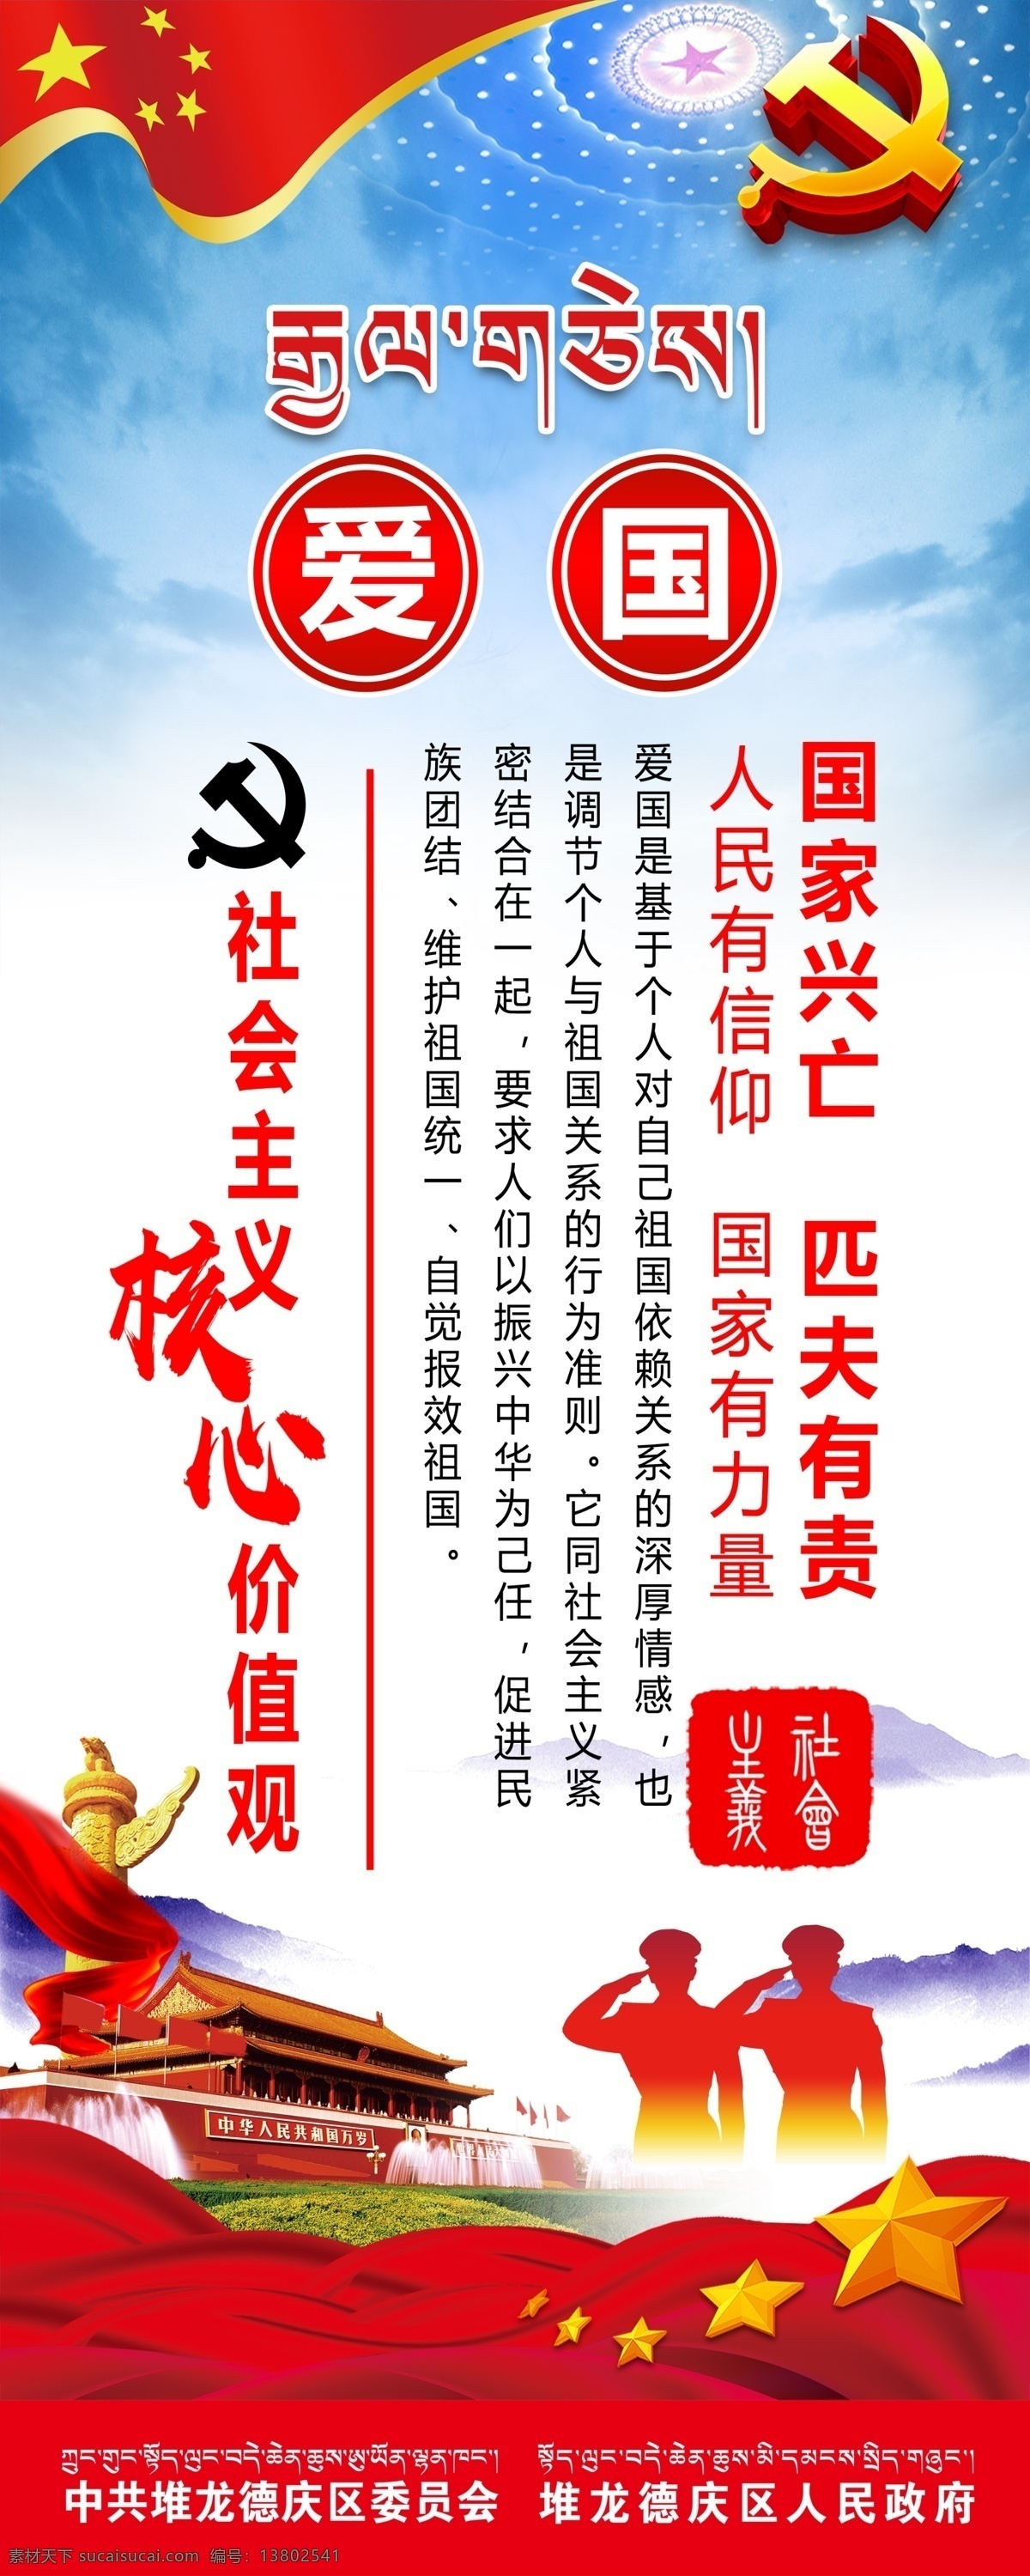 核心价值观 社会主义 爱国 国家兴亡 匹夫有责 天安门 华表 党徵 价值观 海报 喷绘